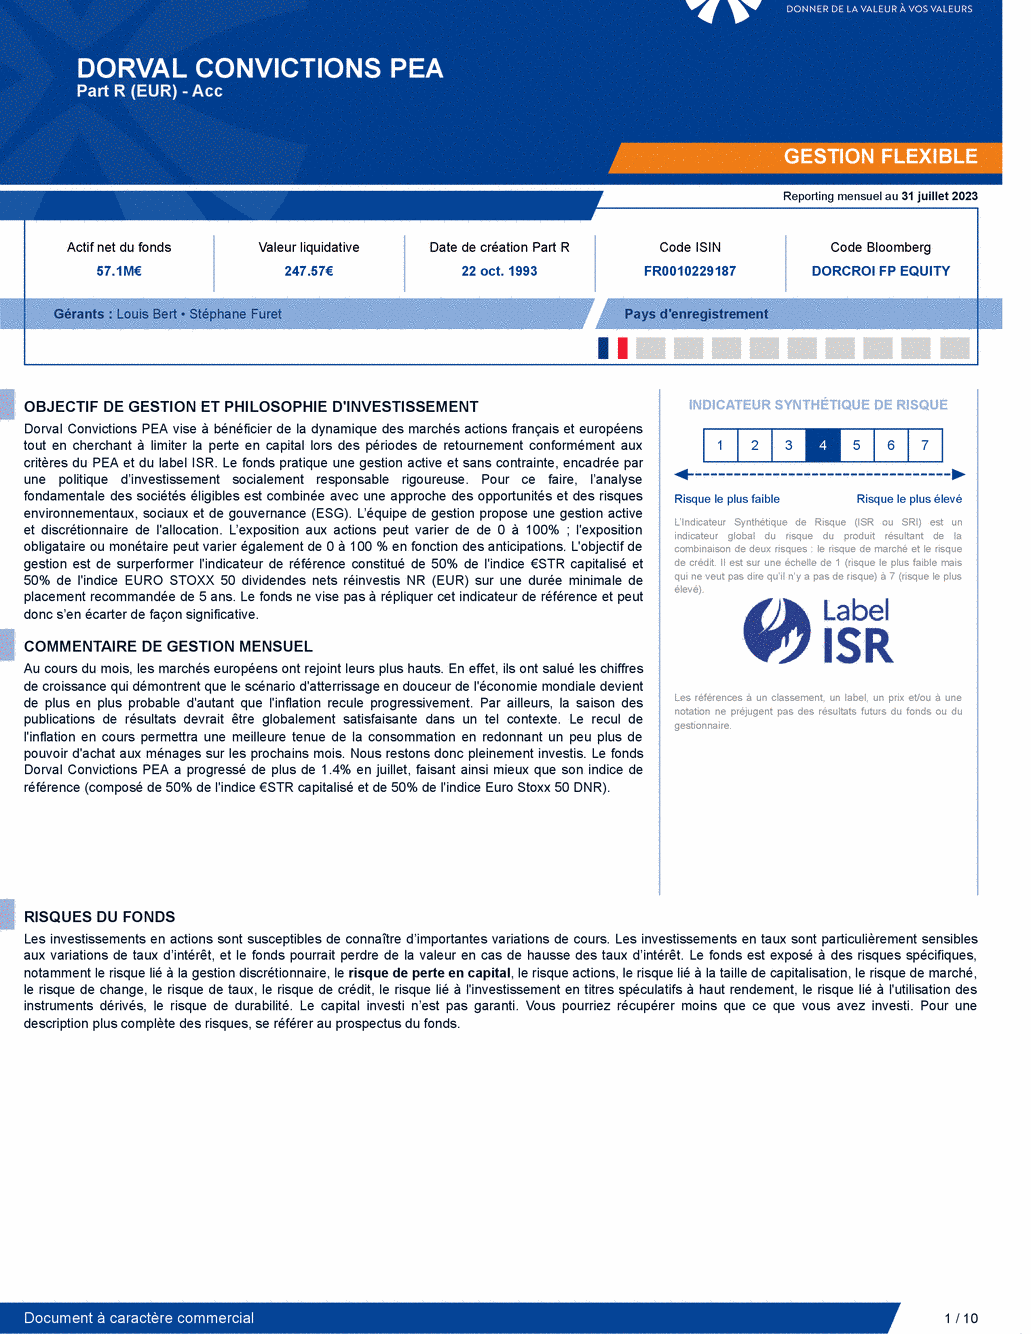 Reporting DORVAL CONVICTIONS PEA - 31/07/2023 - Français